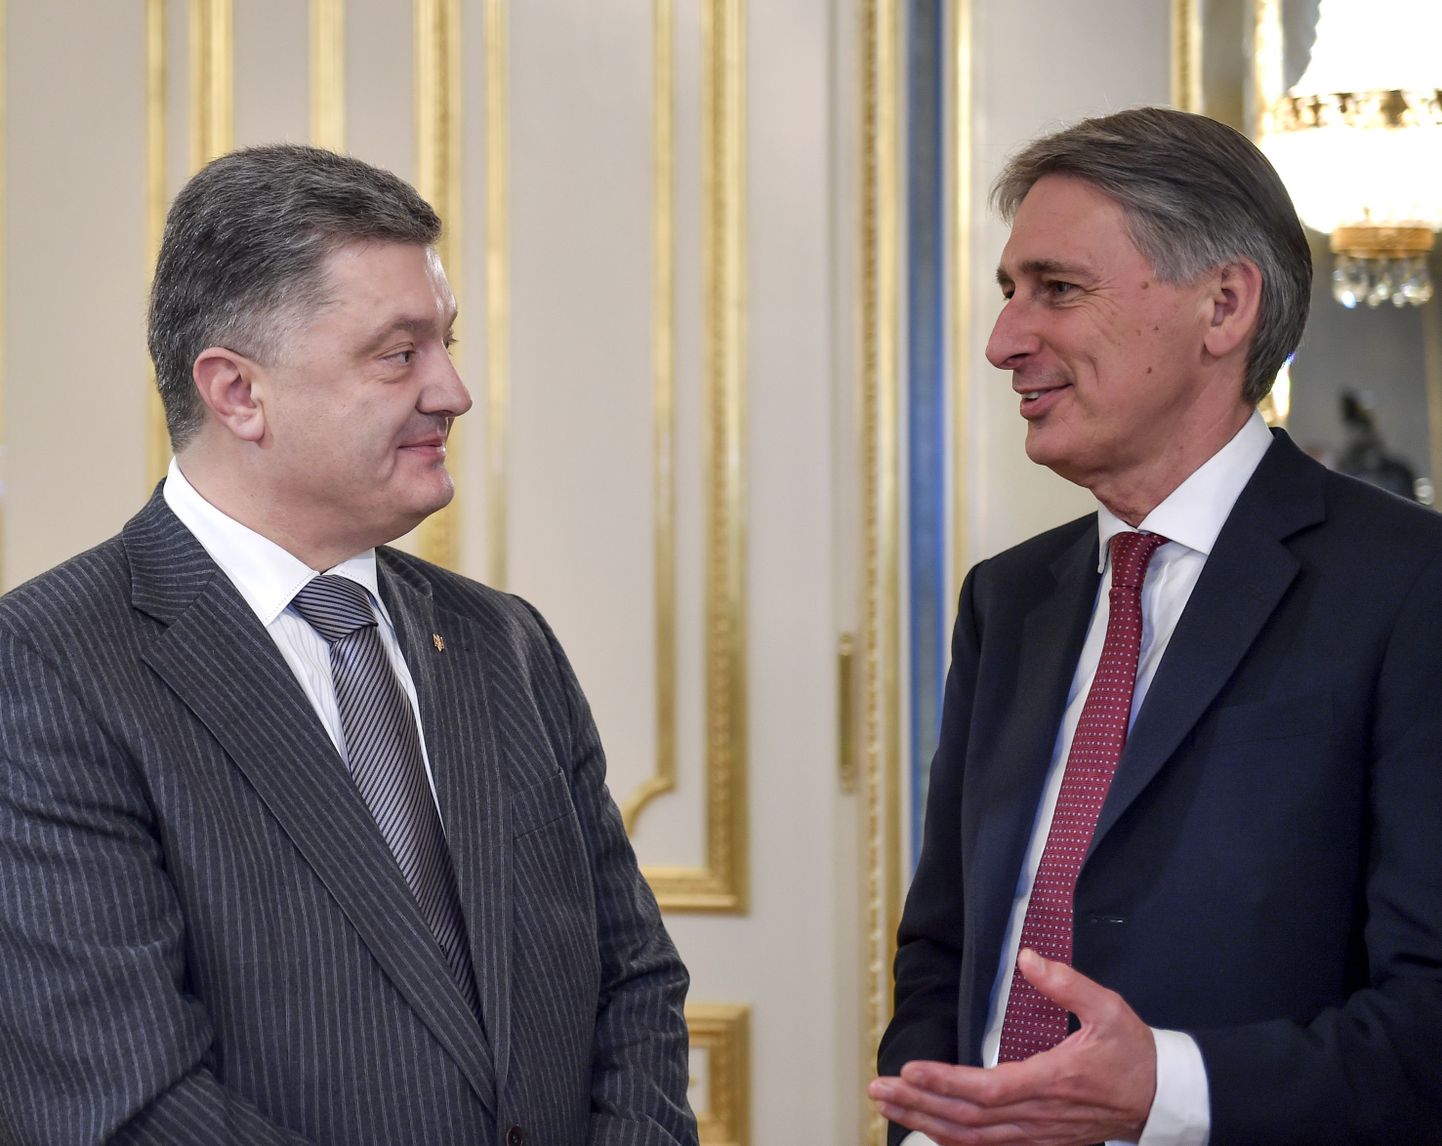 Ühendkuningriigi välisminister Philip Hammond (paremal) vestlushoos Ukraina presidendi Petro Porošenkoga.